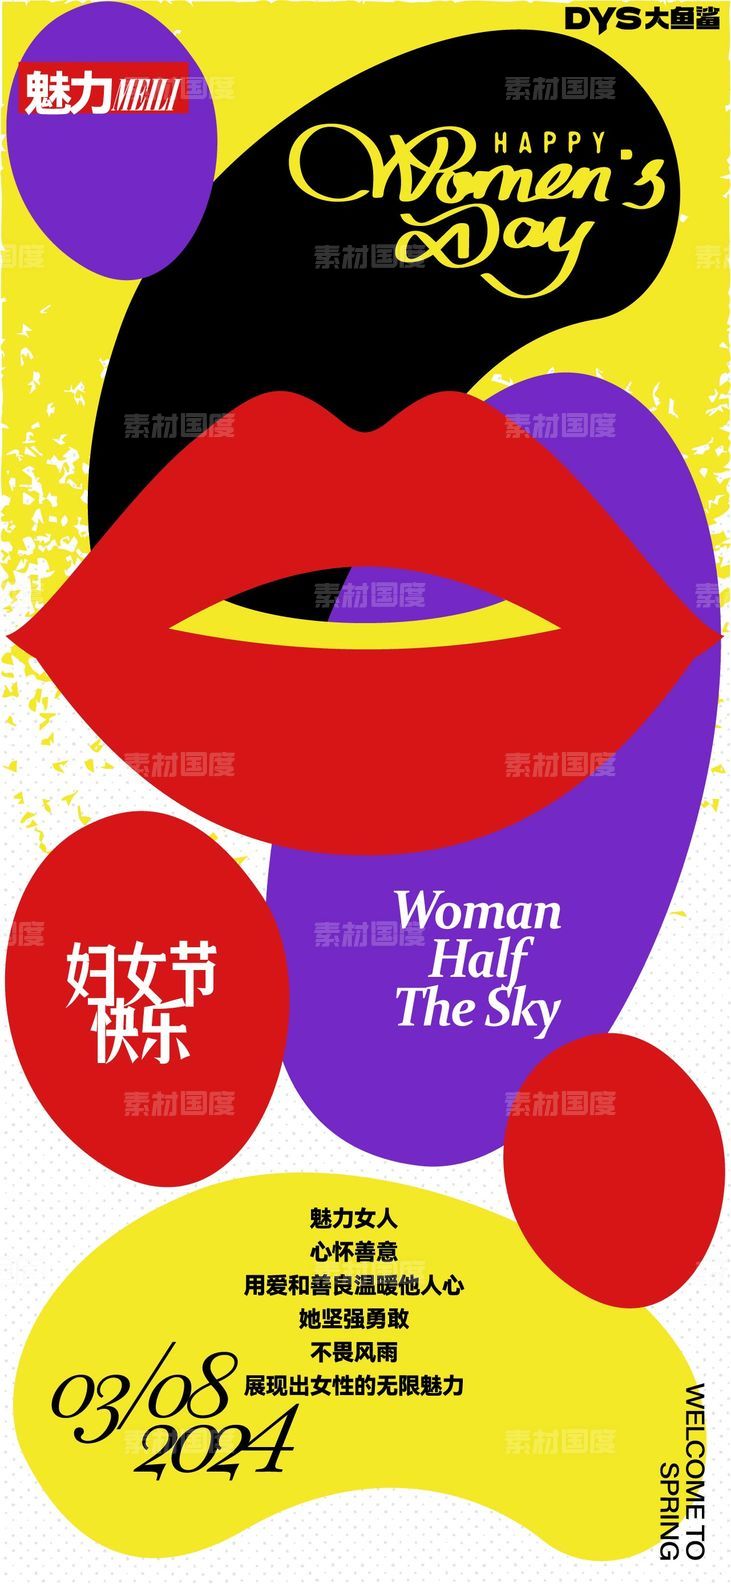 妇女节创意海报